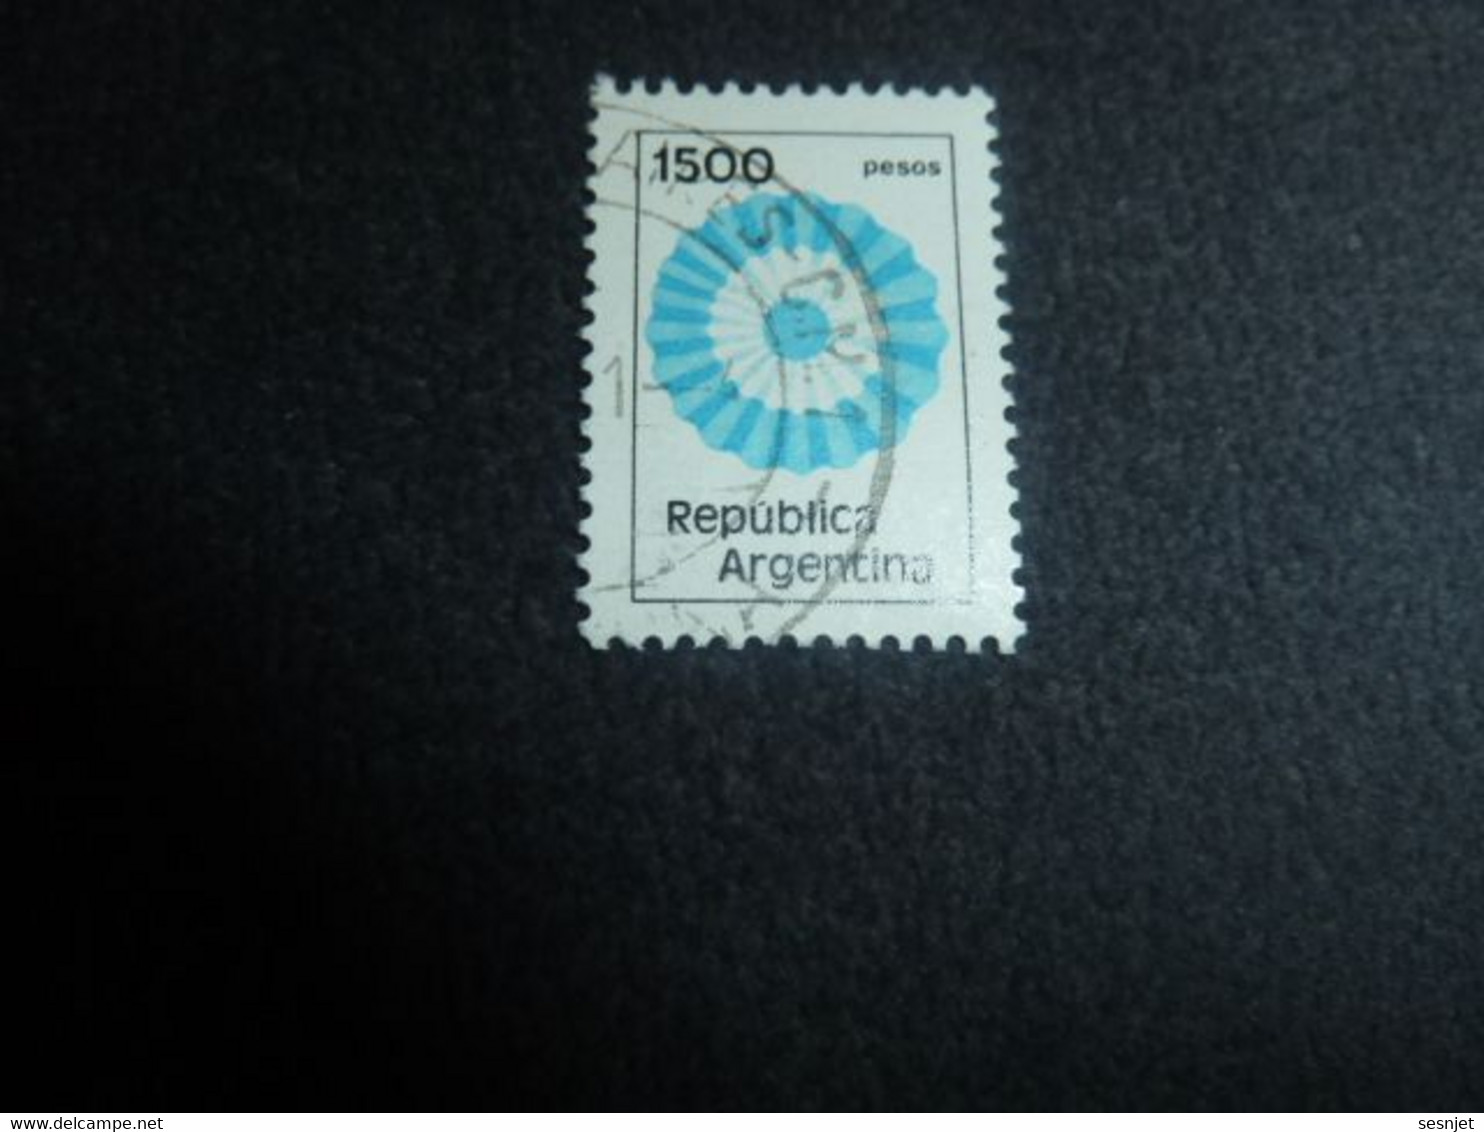 Republica Argentina - Rosace - 1500 Pesos - Yt 1280 - 1288 - Multicolore - Oblitéré - Année 1981 - - Usati